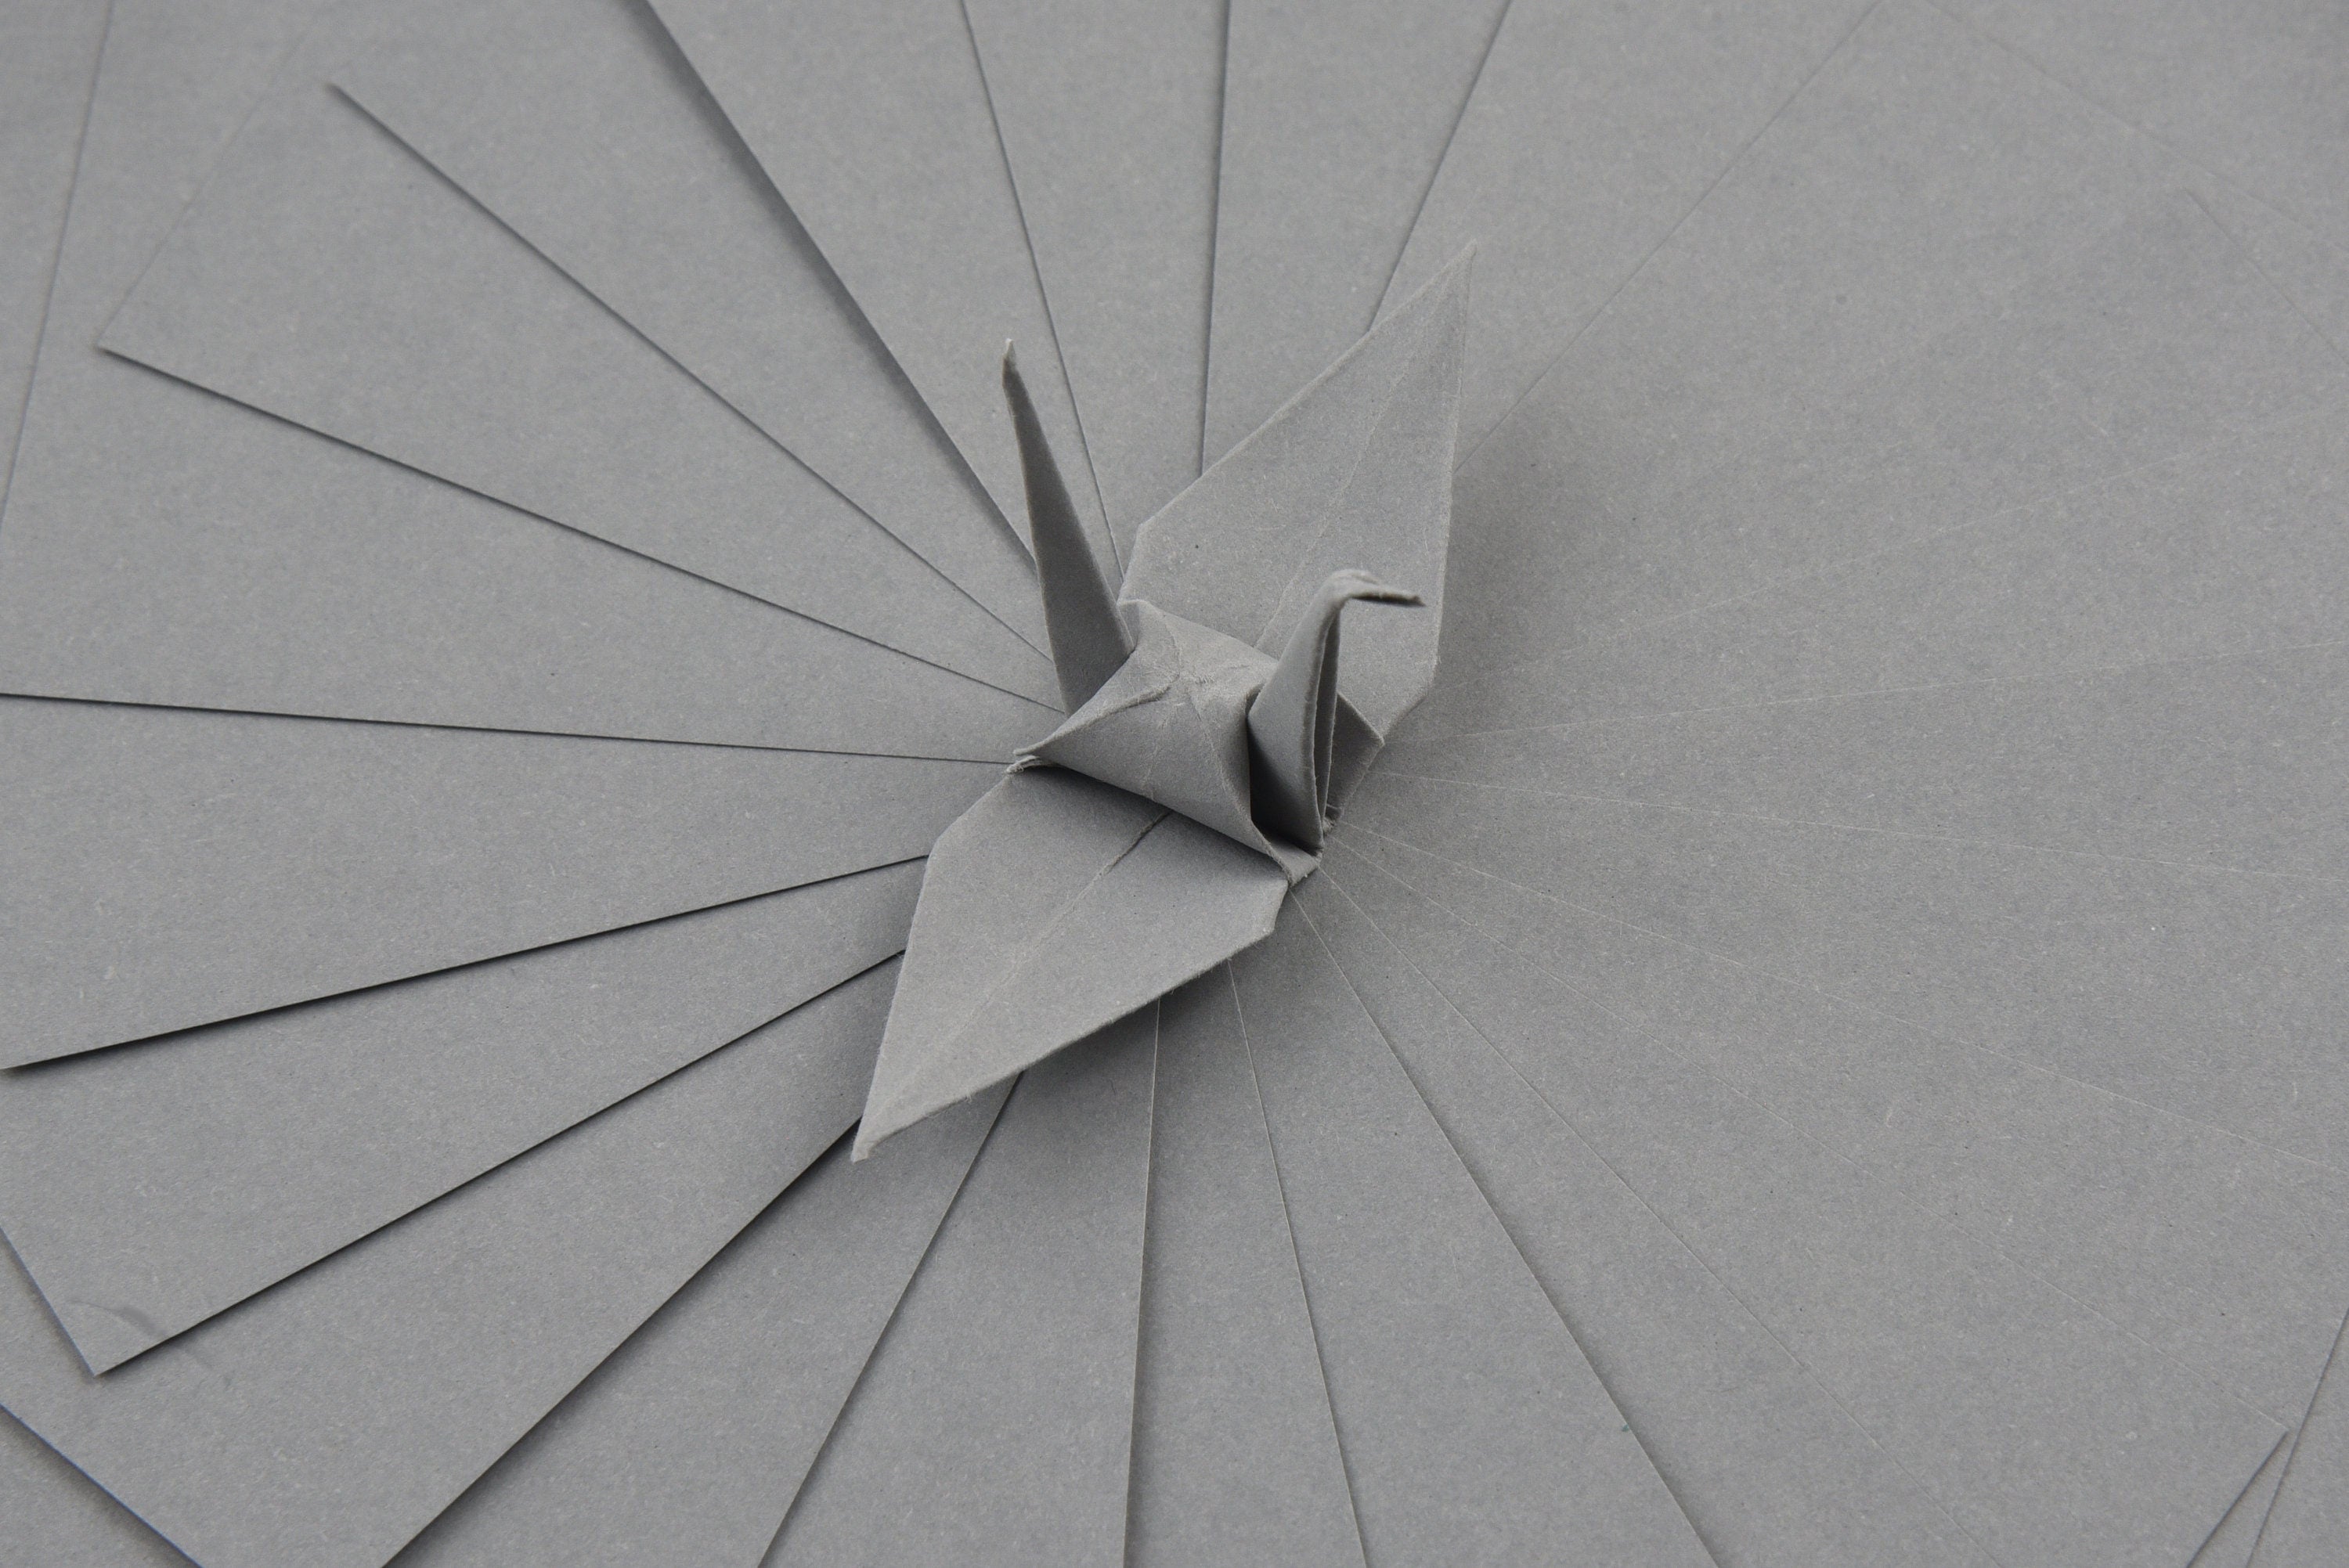 100 fogli di carta origami grigi - 6x6 pollici - Confezione di carta quadrata per piegare, gru origami e decorazioni - S10